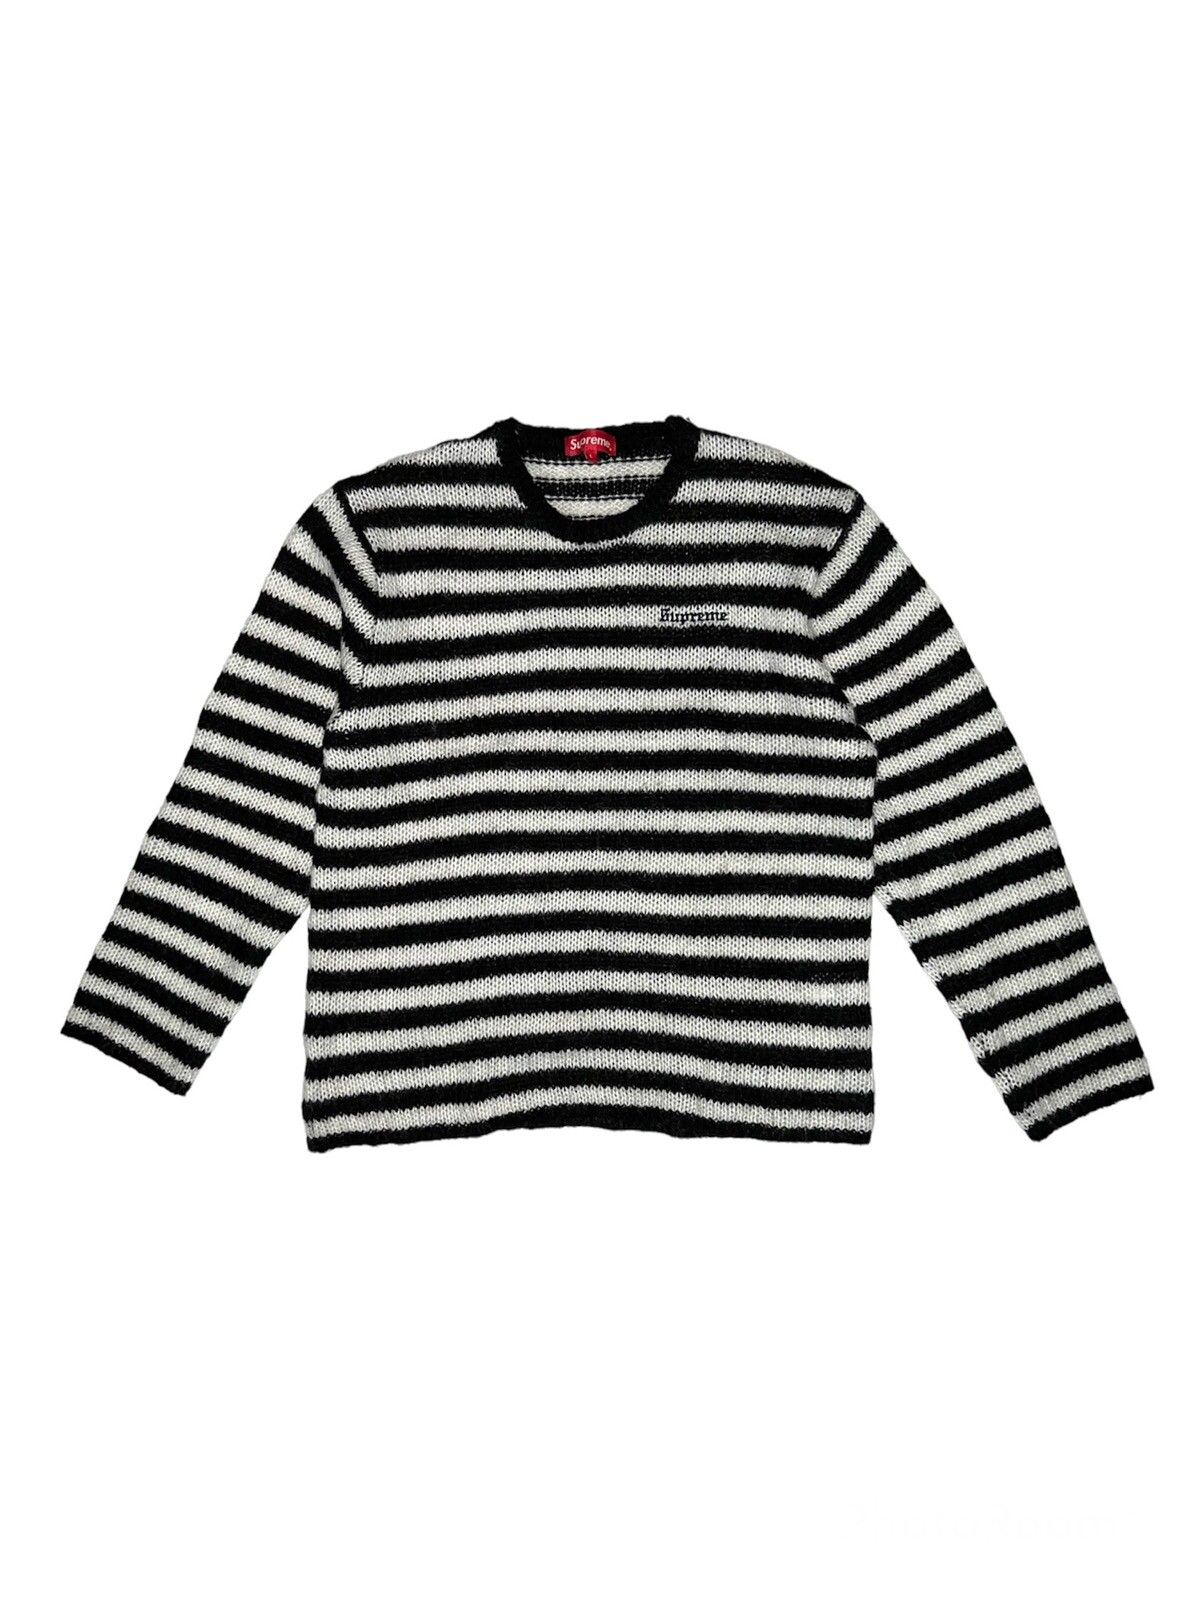 Supreme Supreme Stripe Mohair Sweater | Grailed